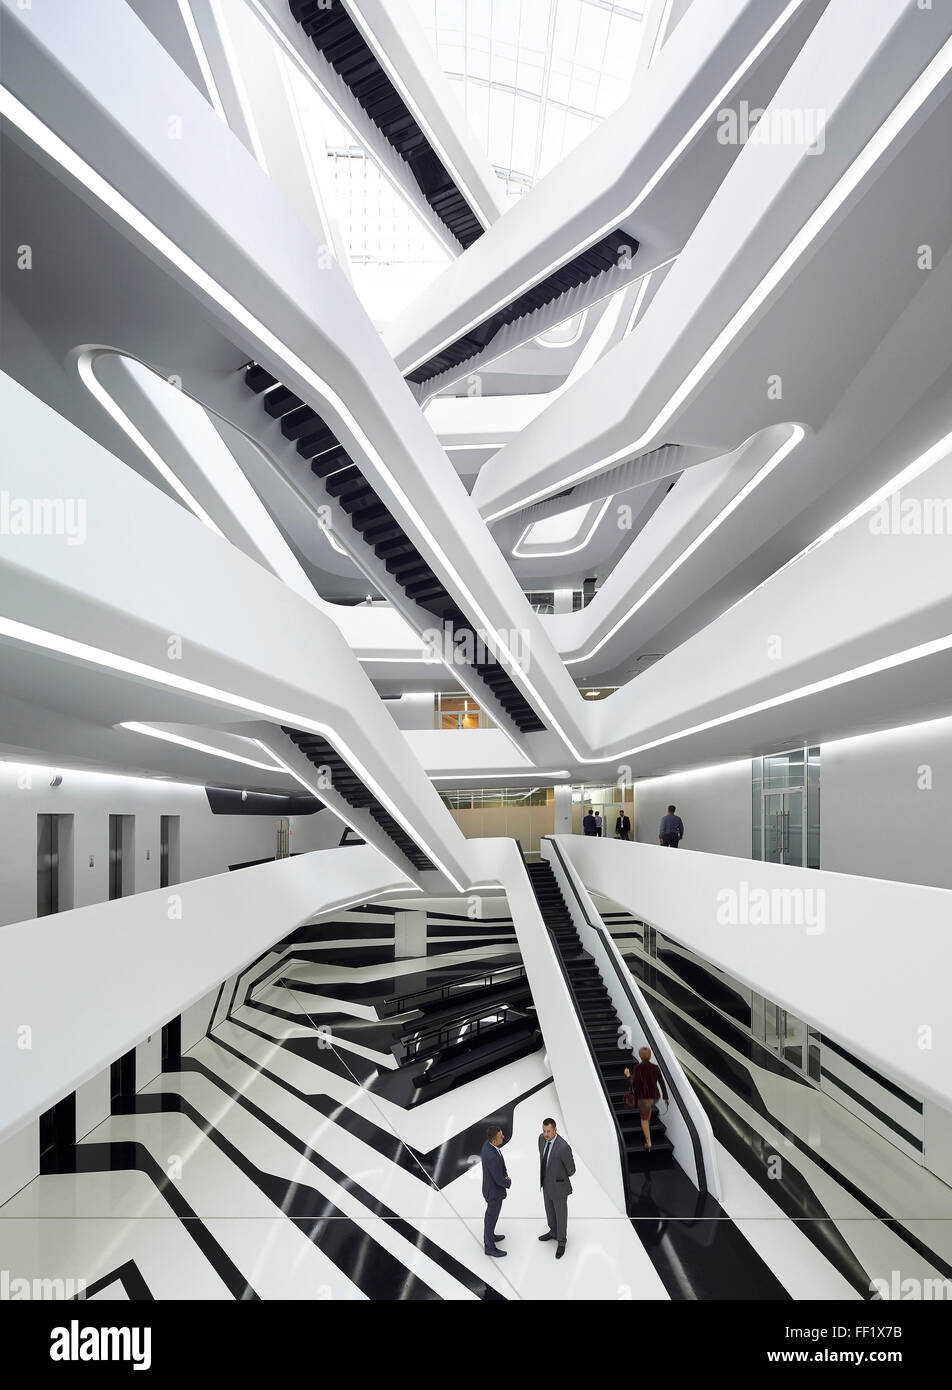 Un atrium central avec balcons et escaliers communicante vue de premier étage. Tour du Dominion, Moscow, Moscou, Russie. Ar Banque D'Images